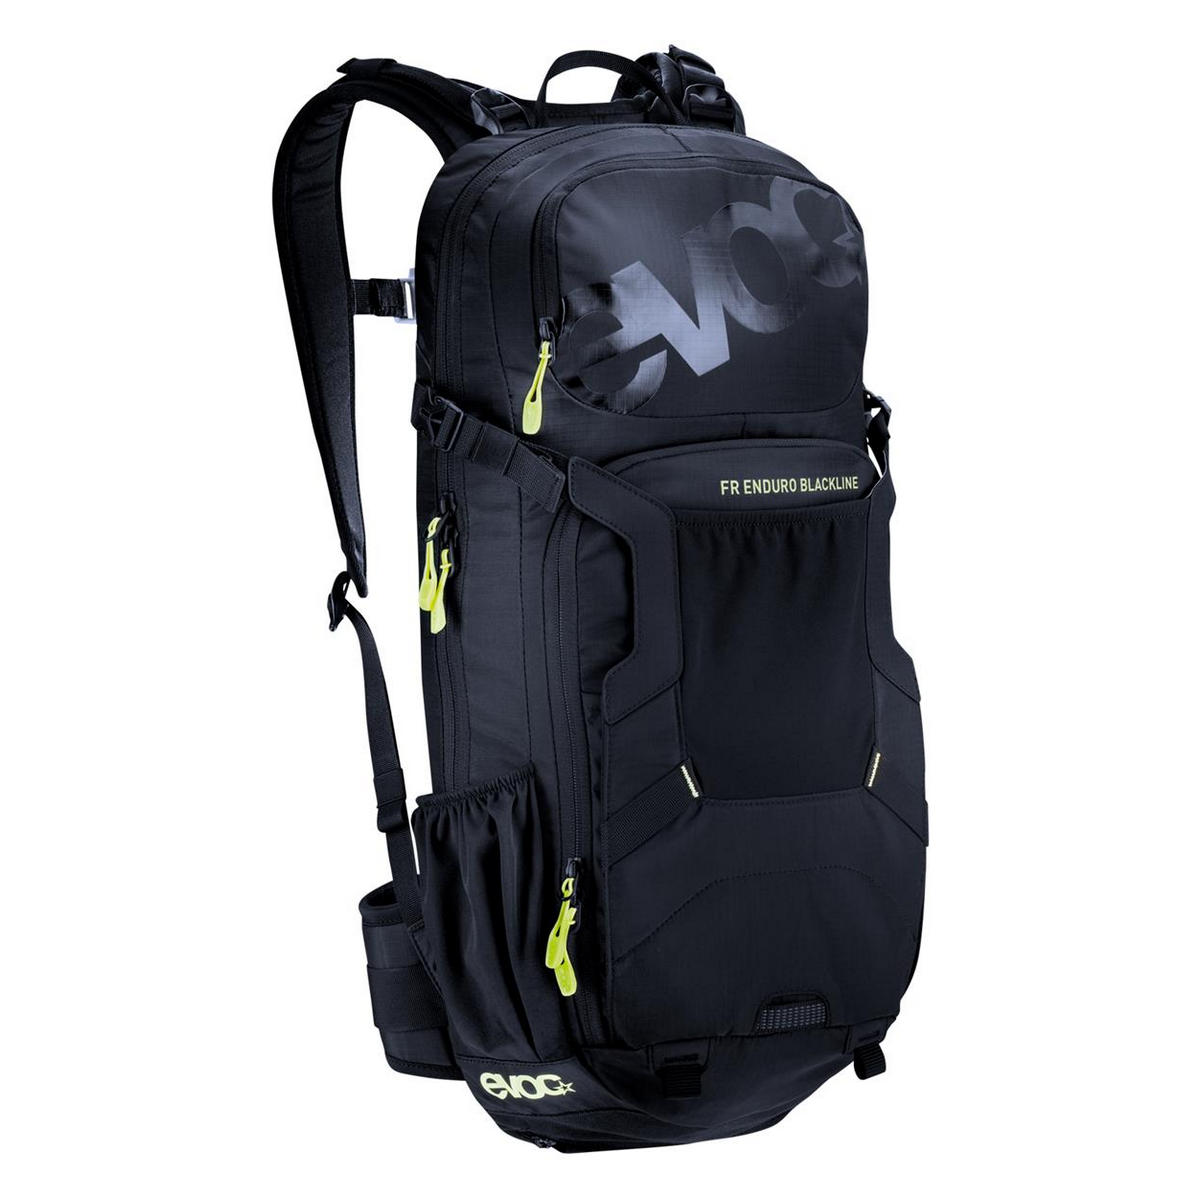 FR enduro blackline backpack 16lt with back protector size M/L